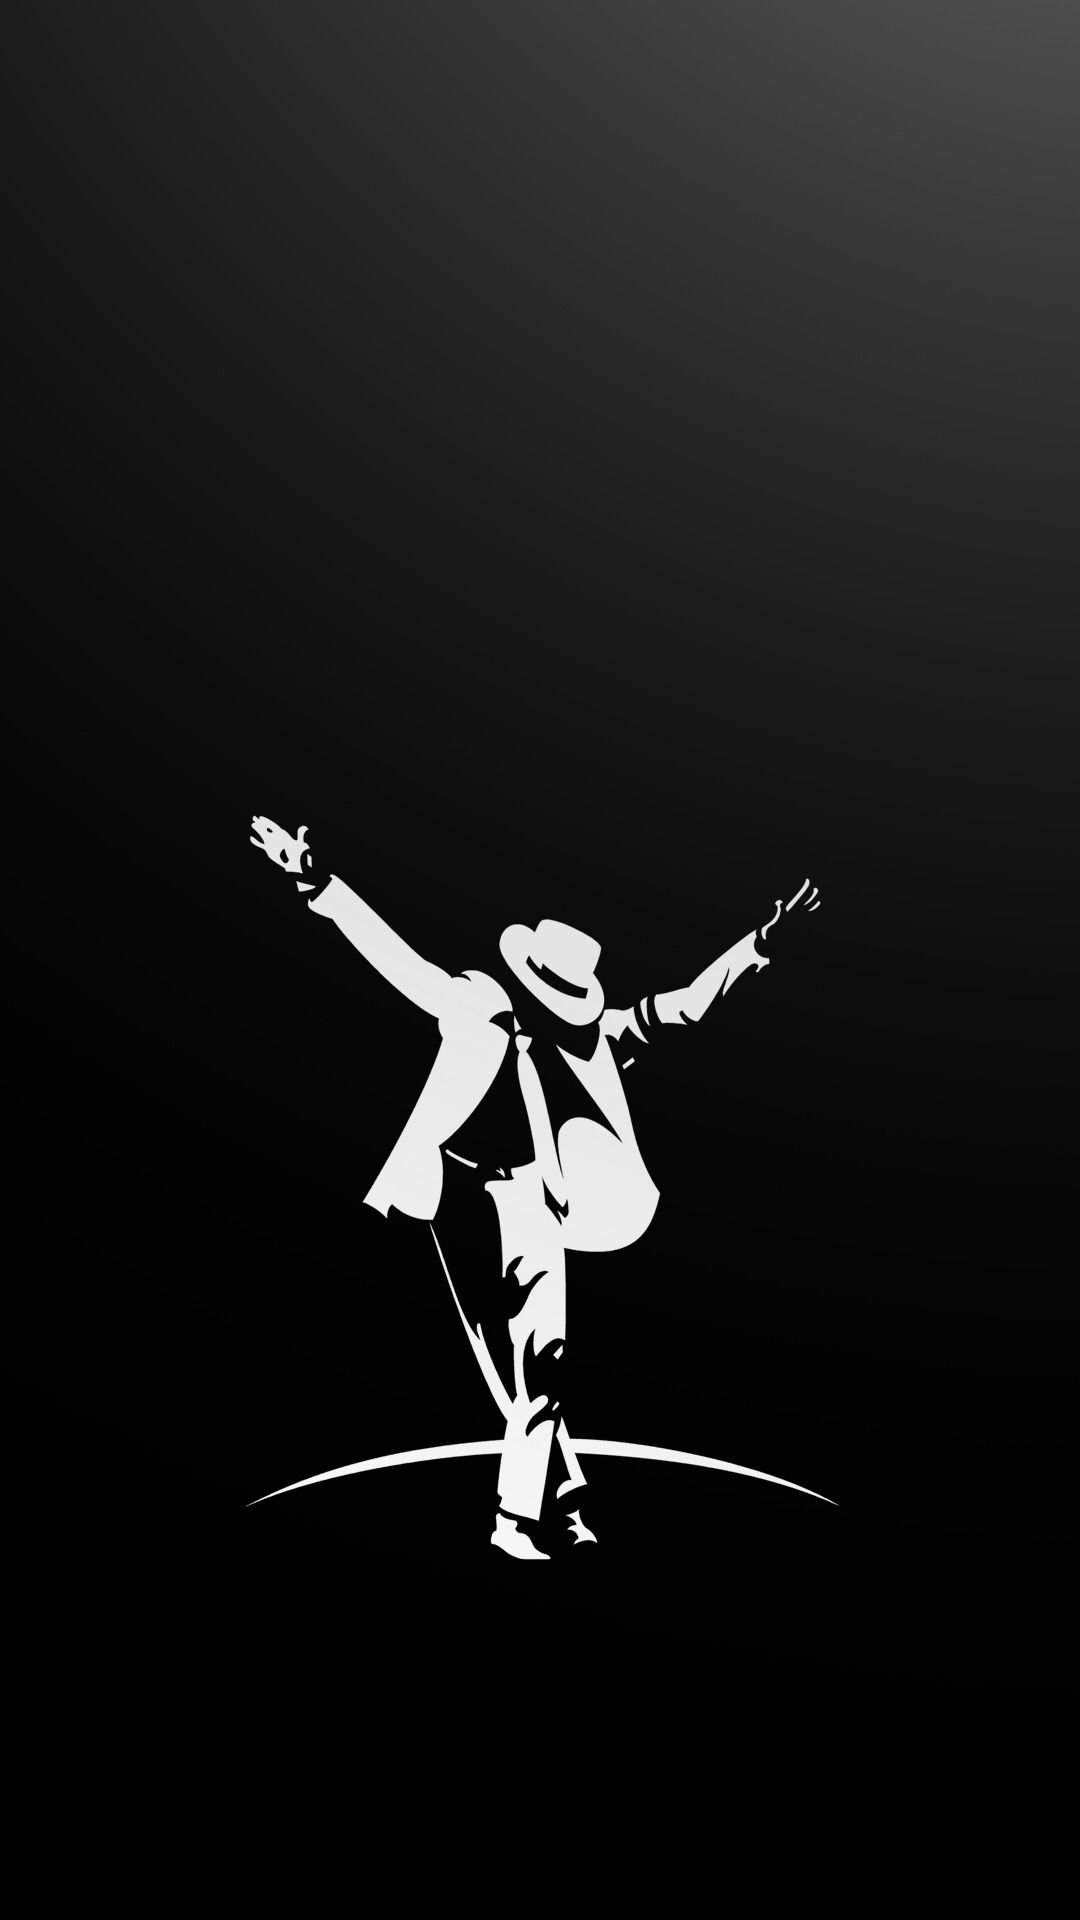 마이클 잭슨 춤 벽지,춤추는 사람,댄스,삽화,현대 무용,생기